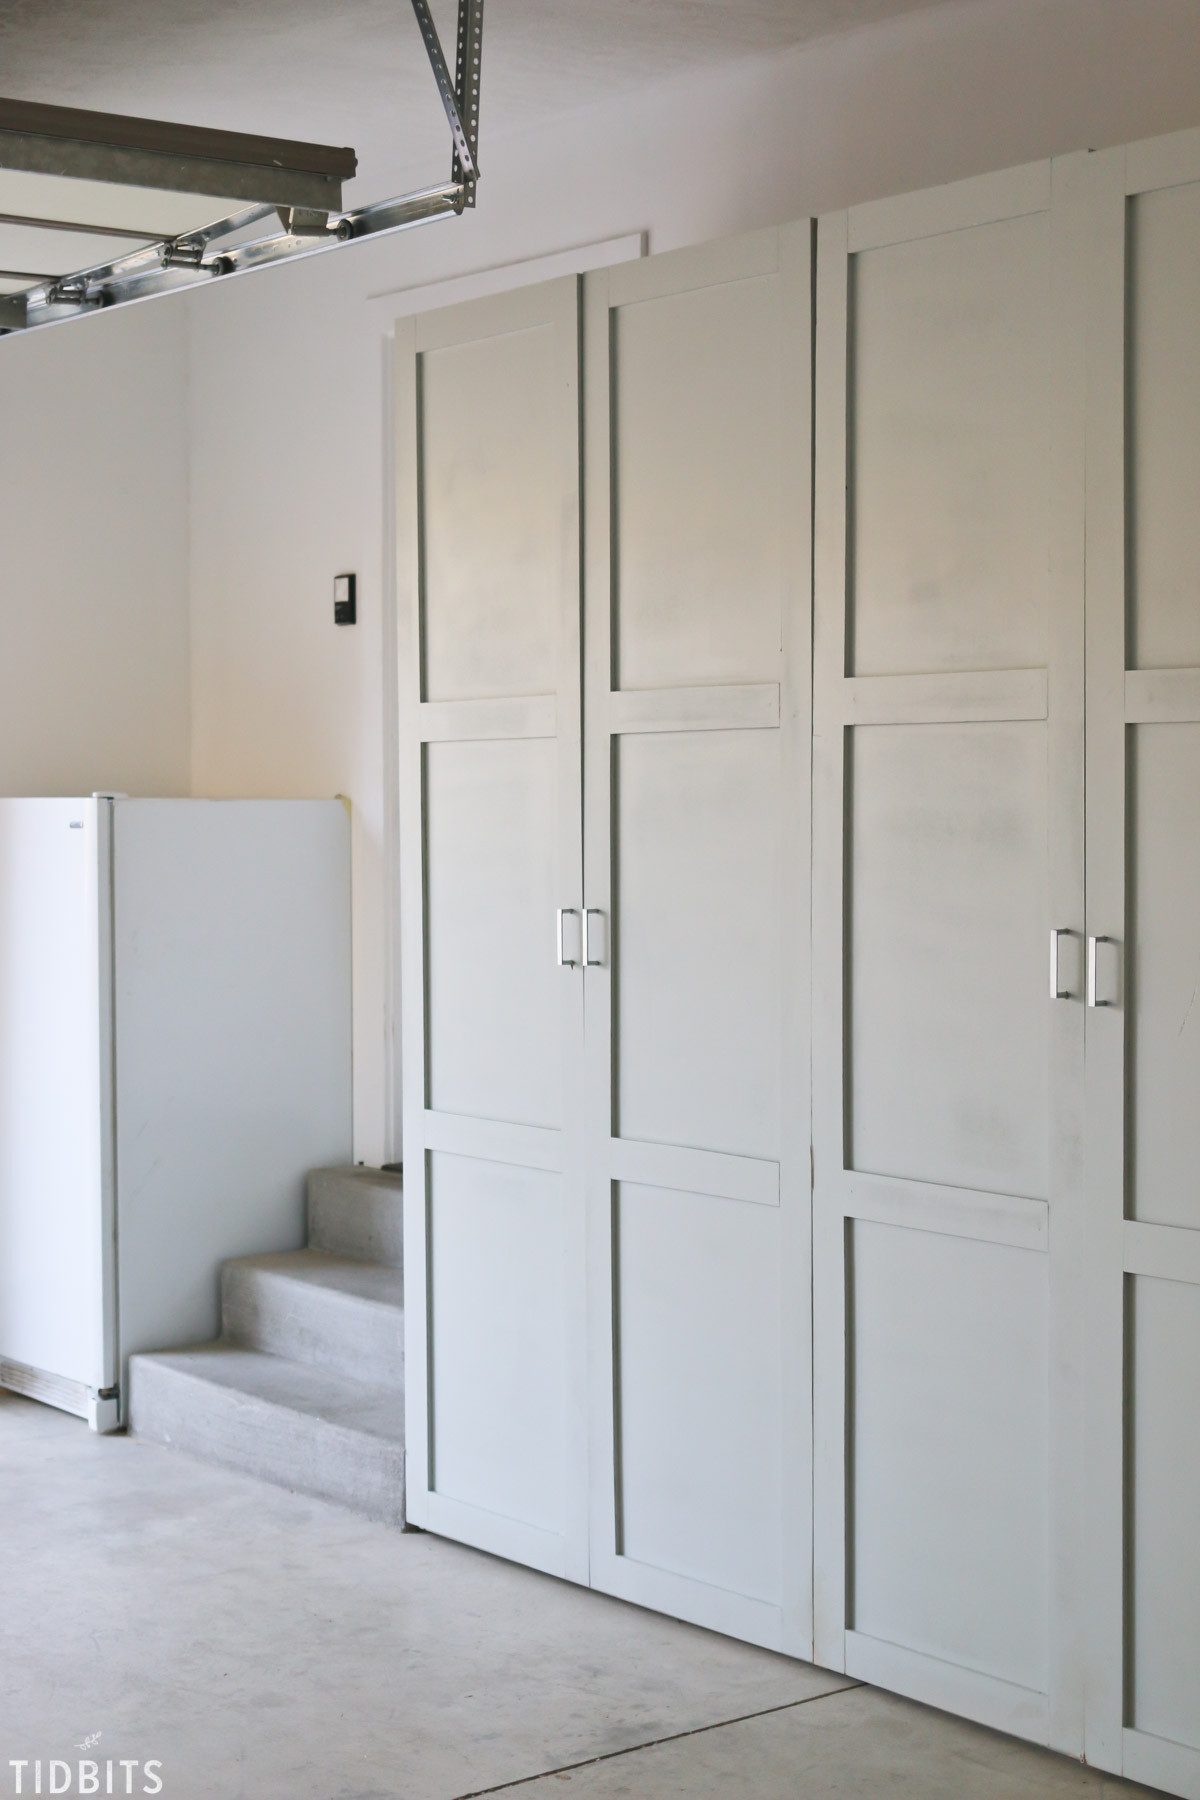 Best ideas about Garage Storage Cabinet Plans
. Save or Pin Garage Storage Cabinets Now.